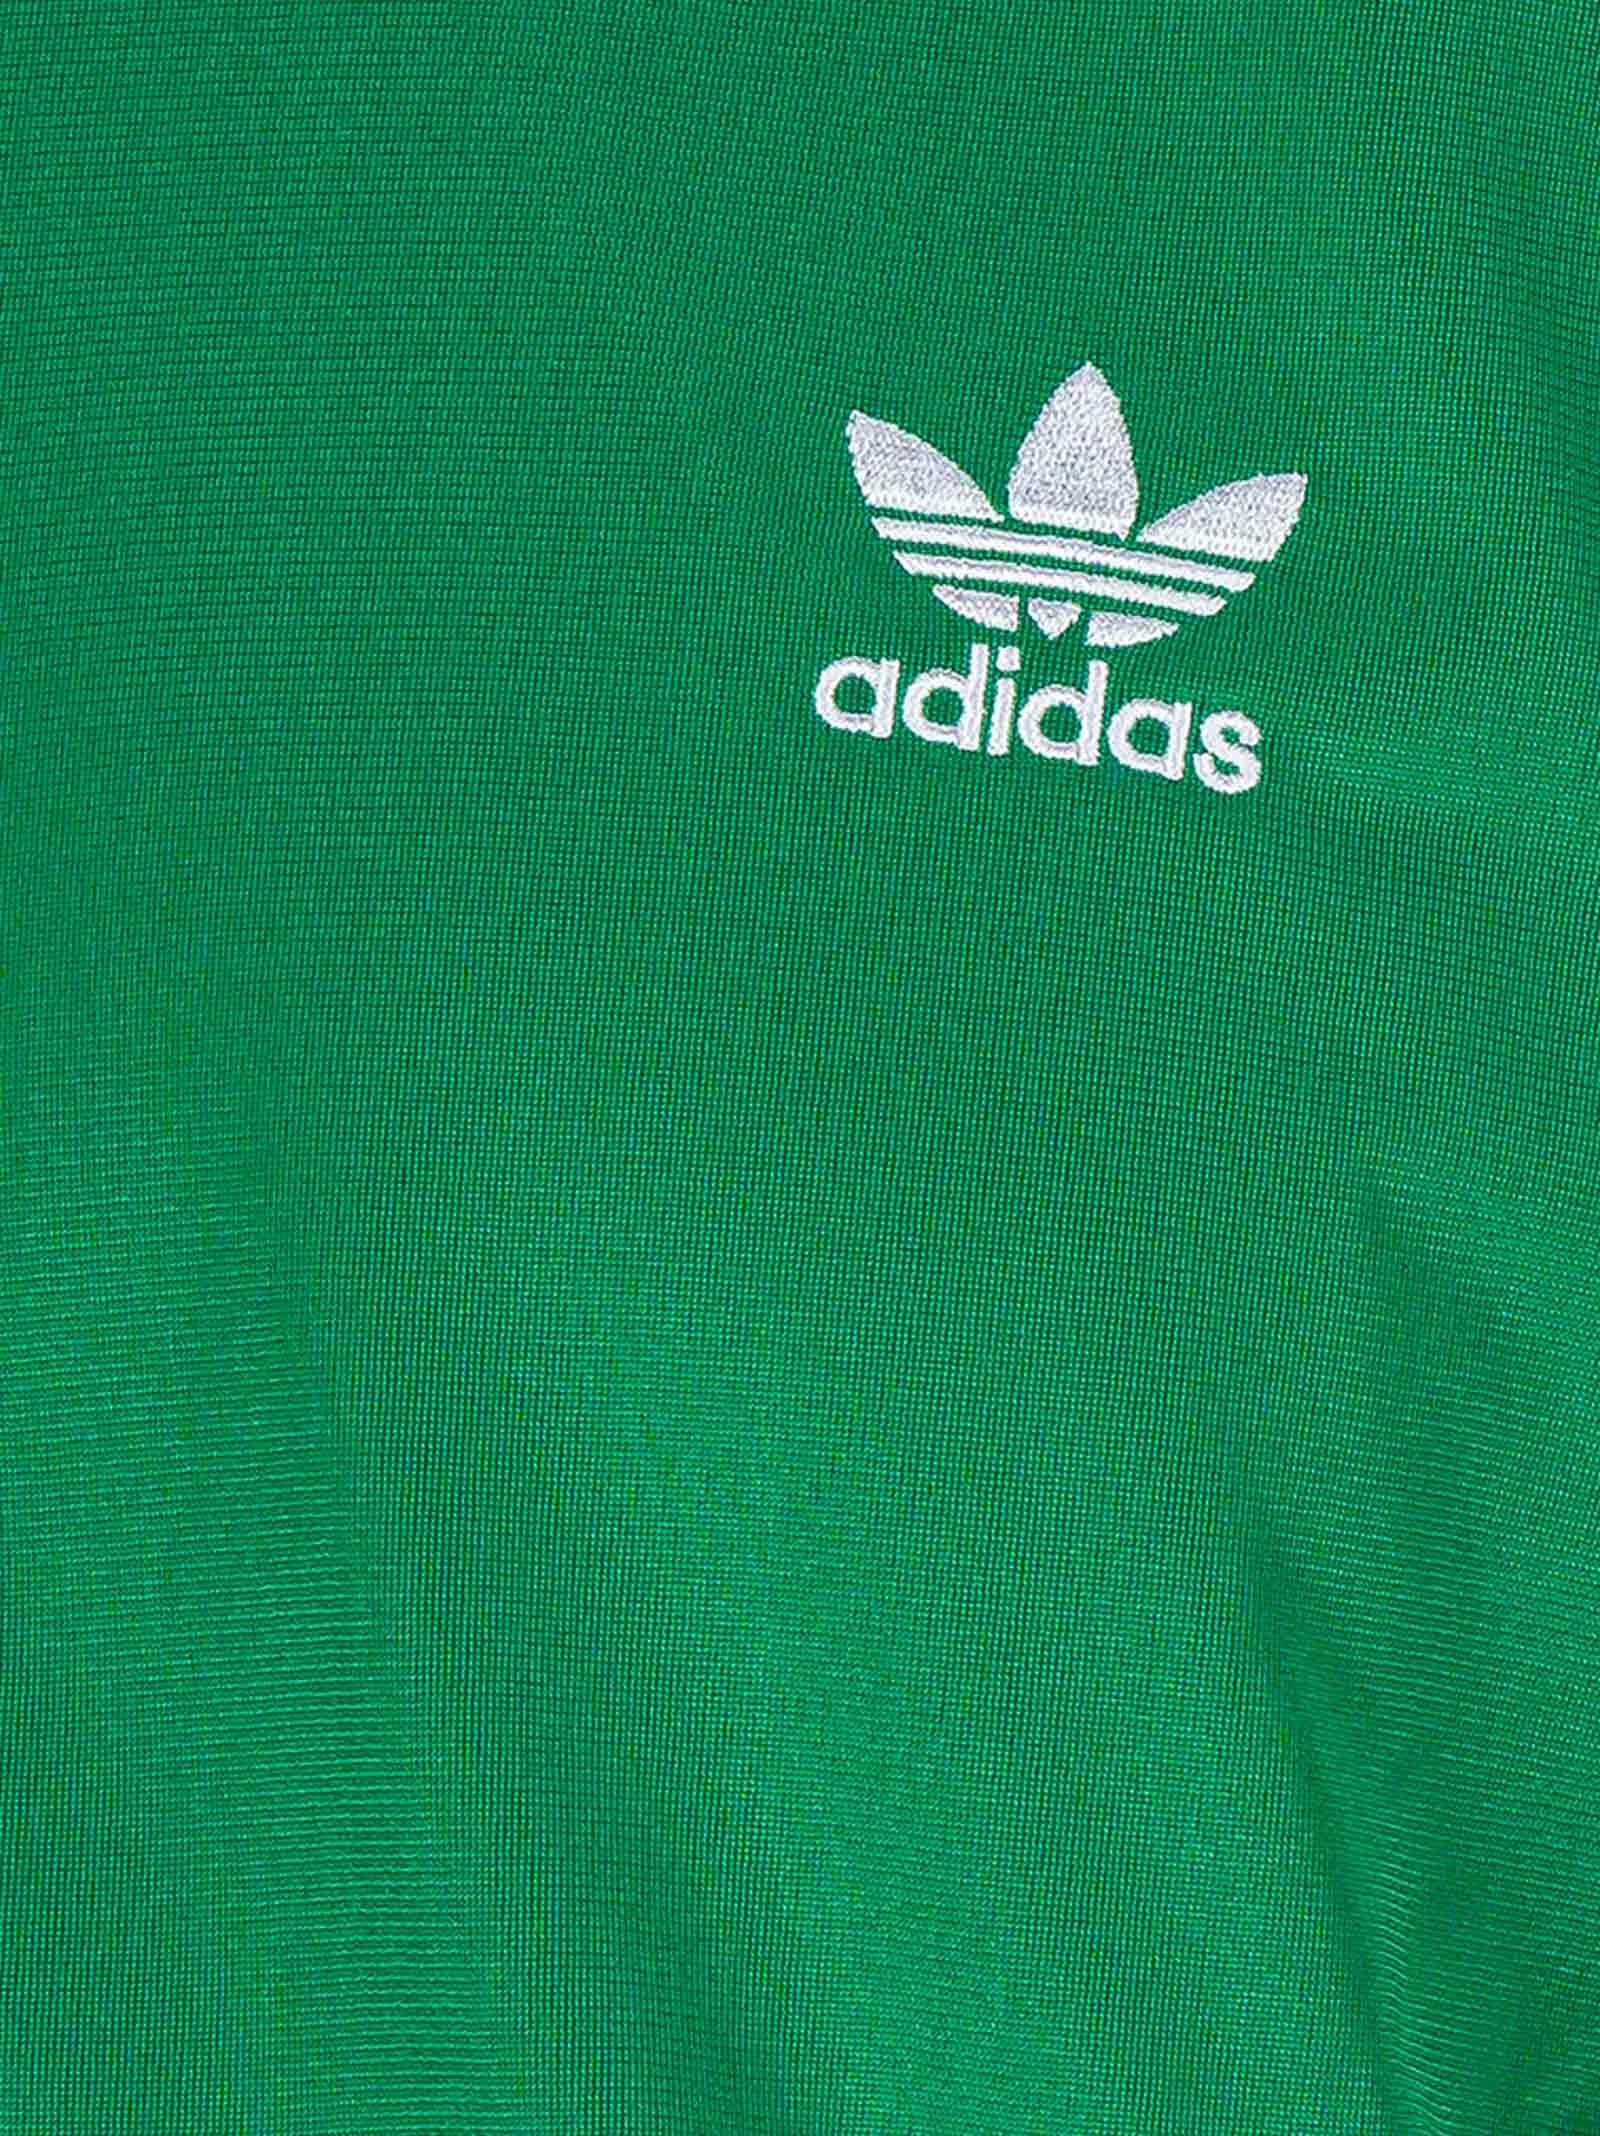 adidas Originals Men's Green Adicolor Classics Firebird Track Jacket